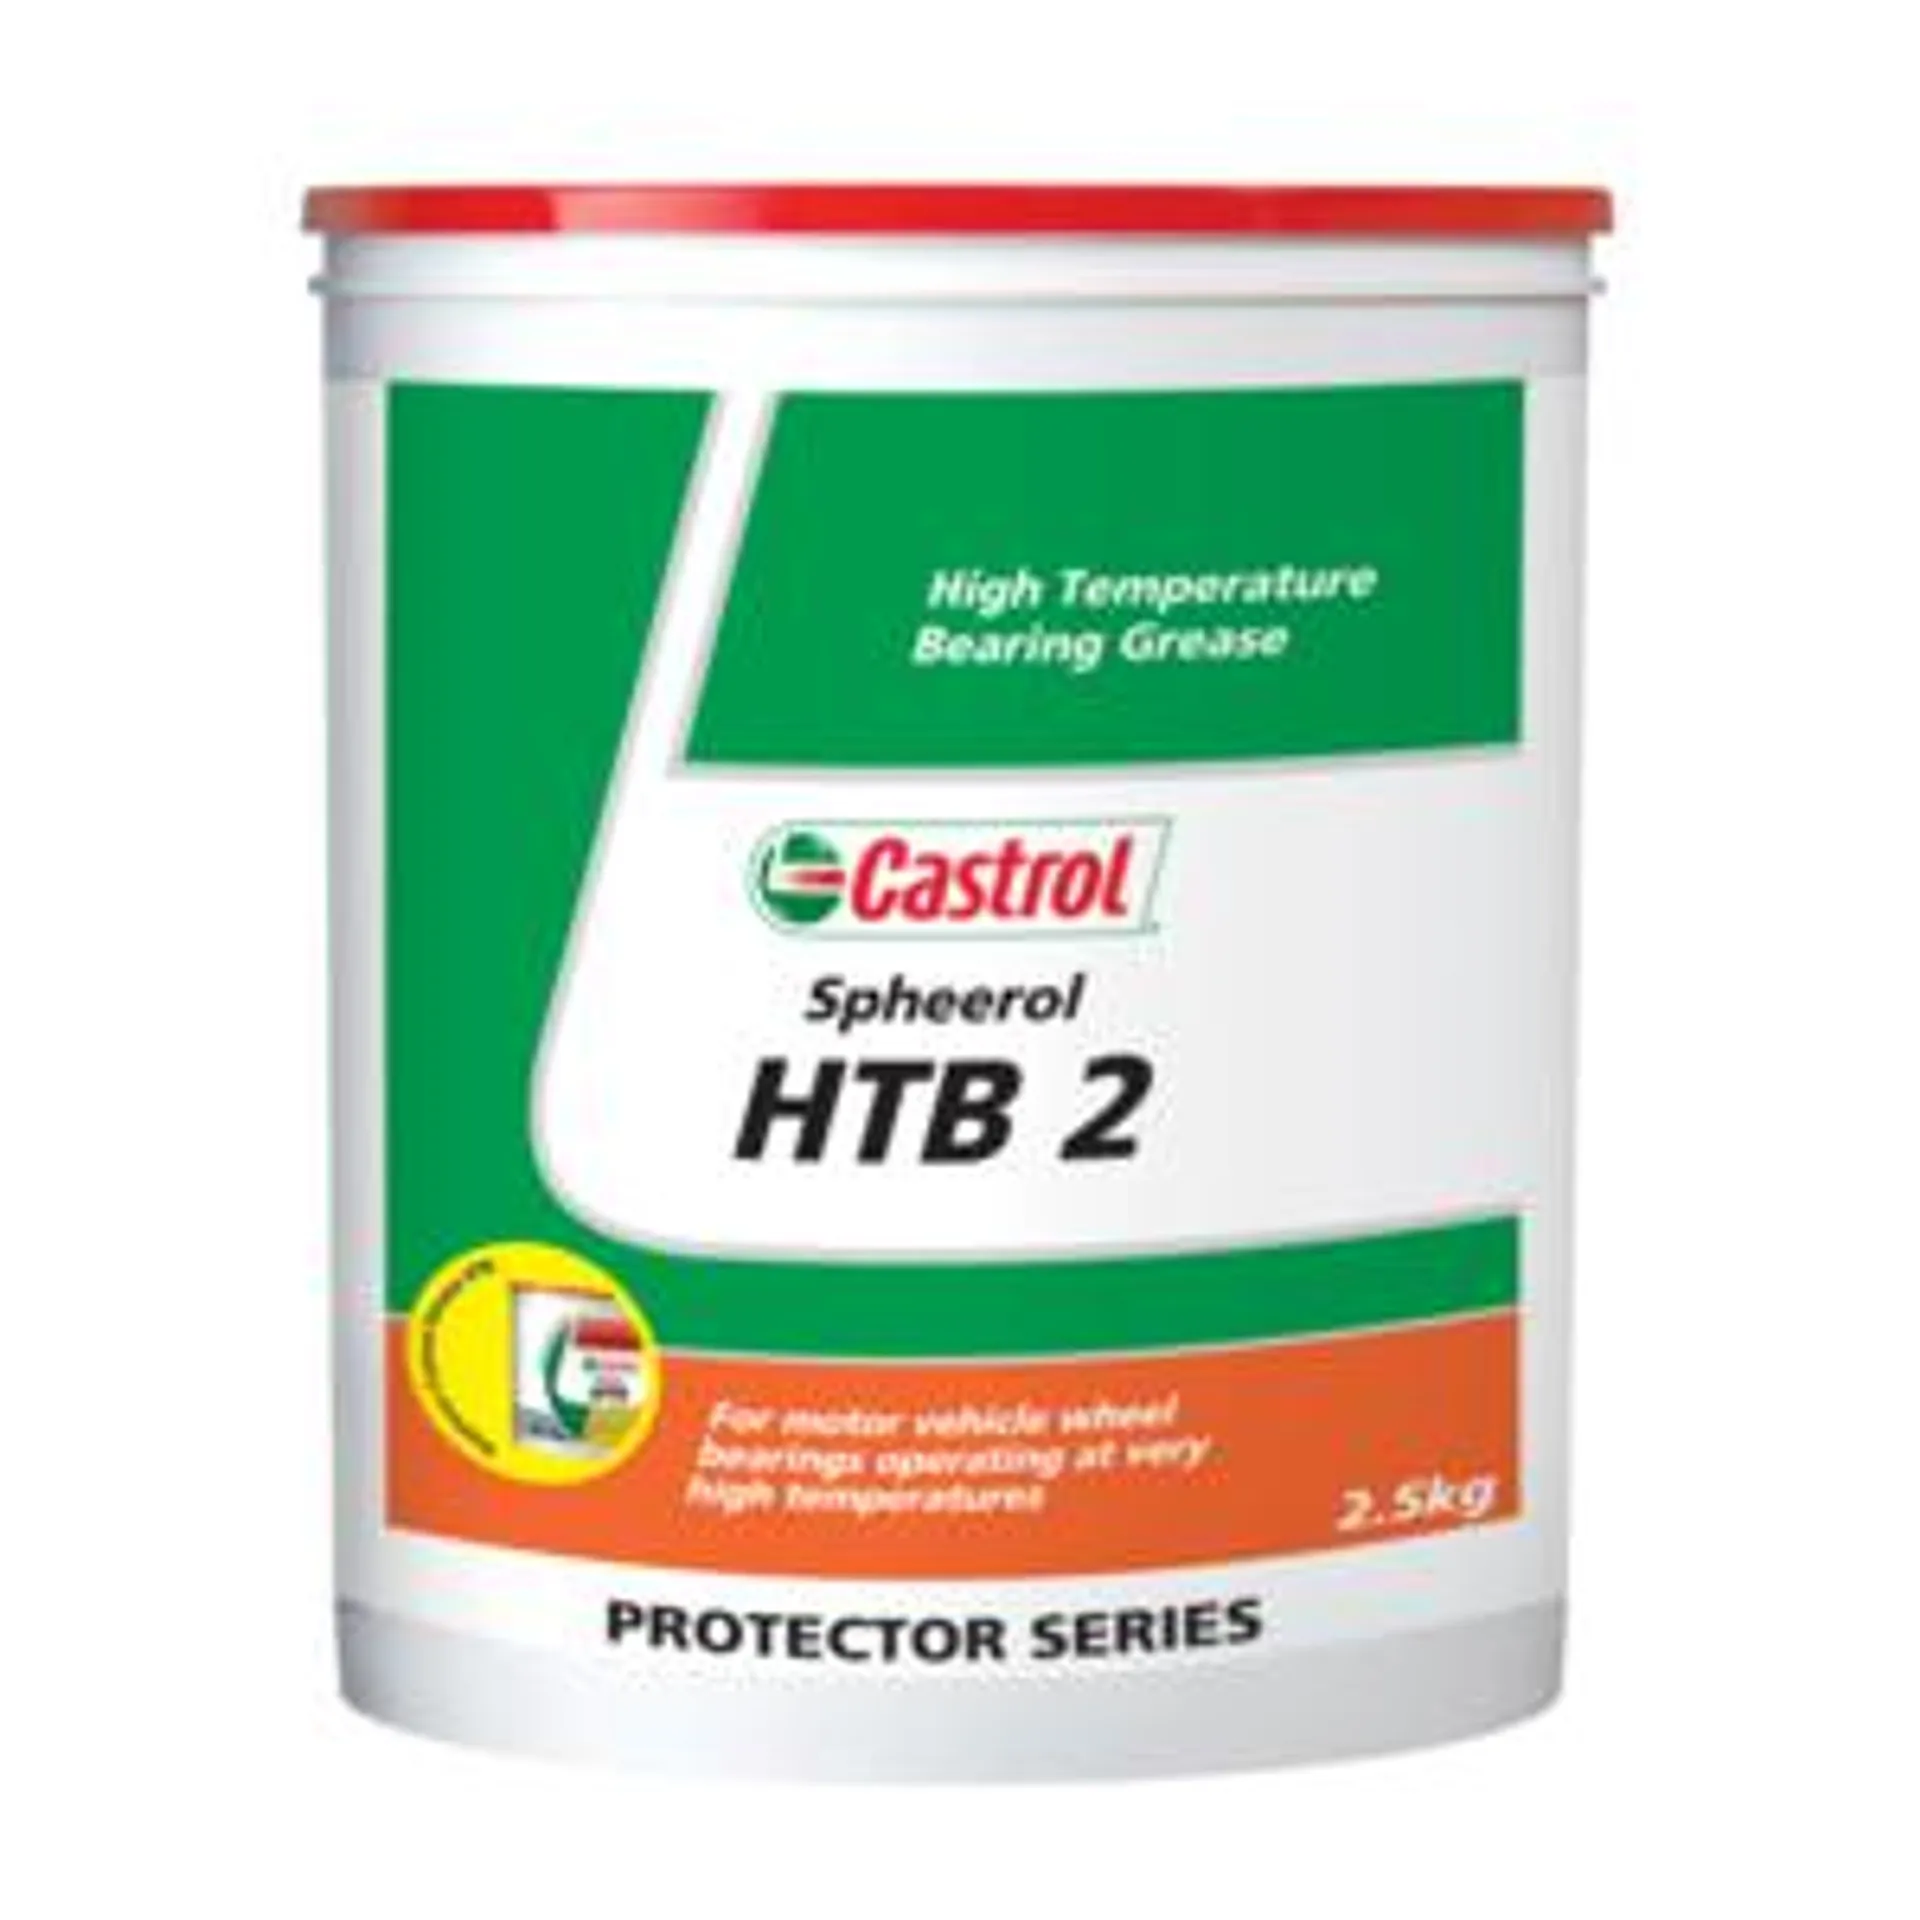 Castrol Spheerol HTB 2 Grease 2.5kg - 3371033